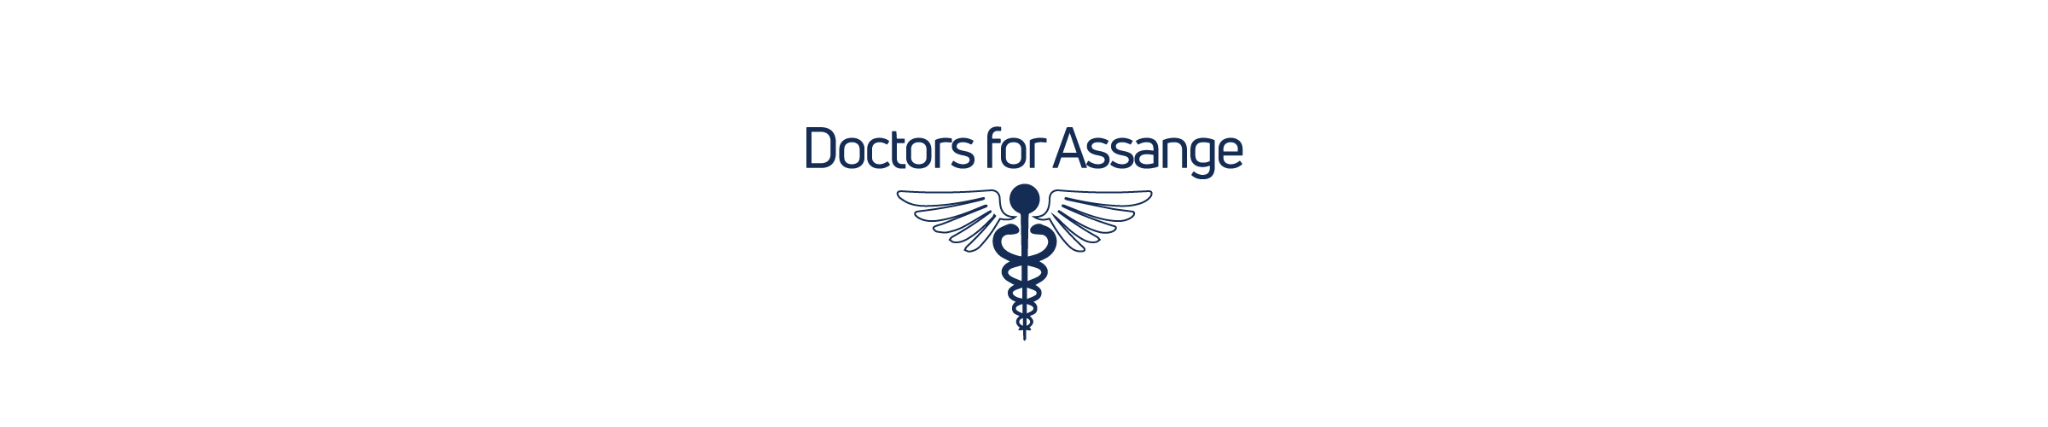 Doctors' Orders: 'Do Not Extradite Assange'